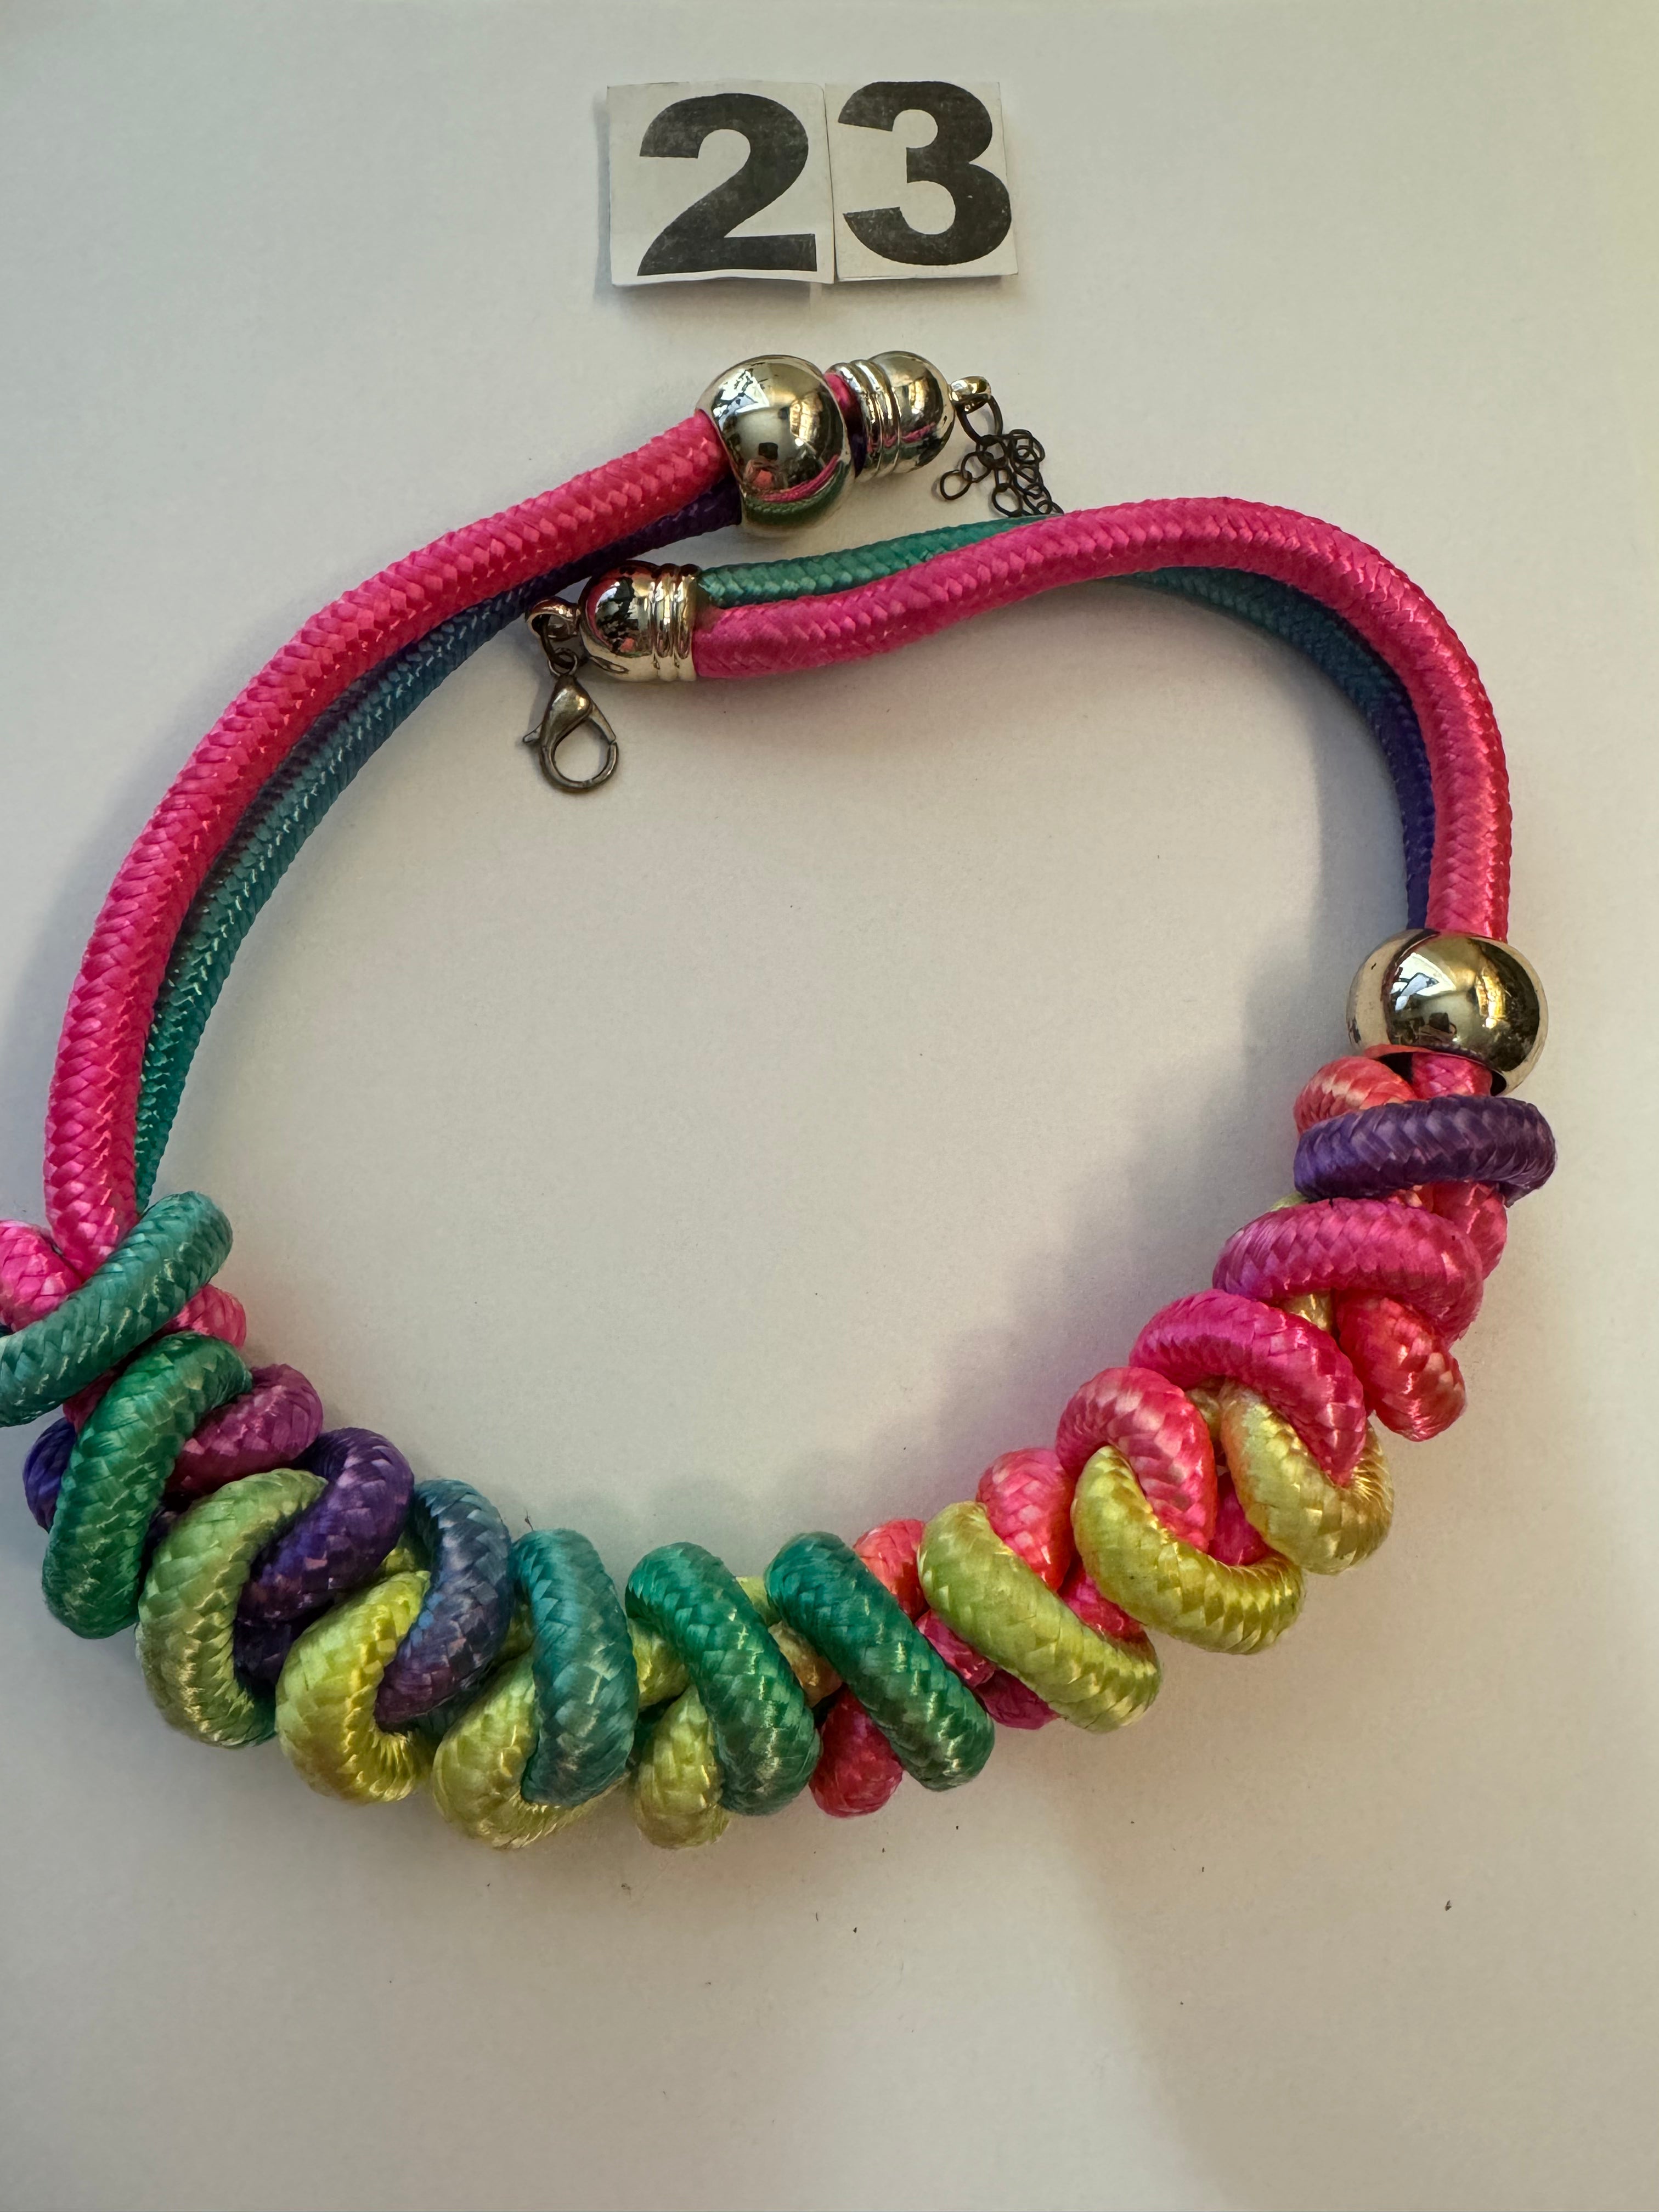 Multicolored Necklace